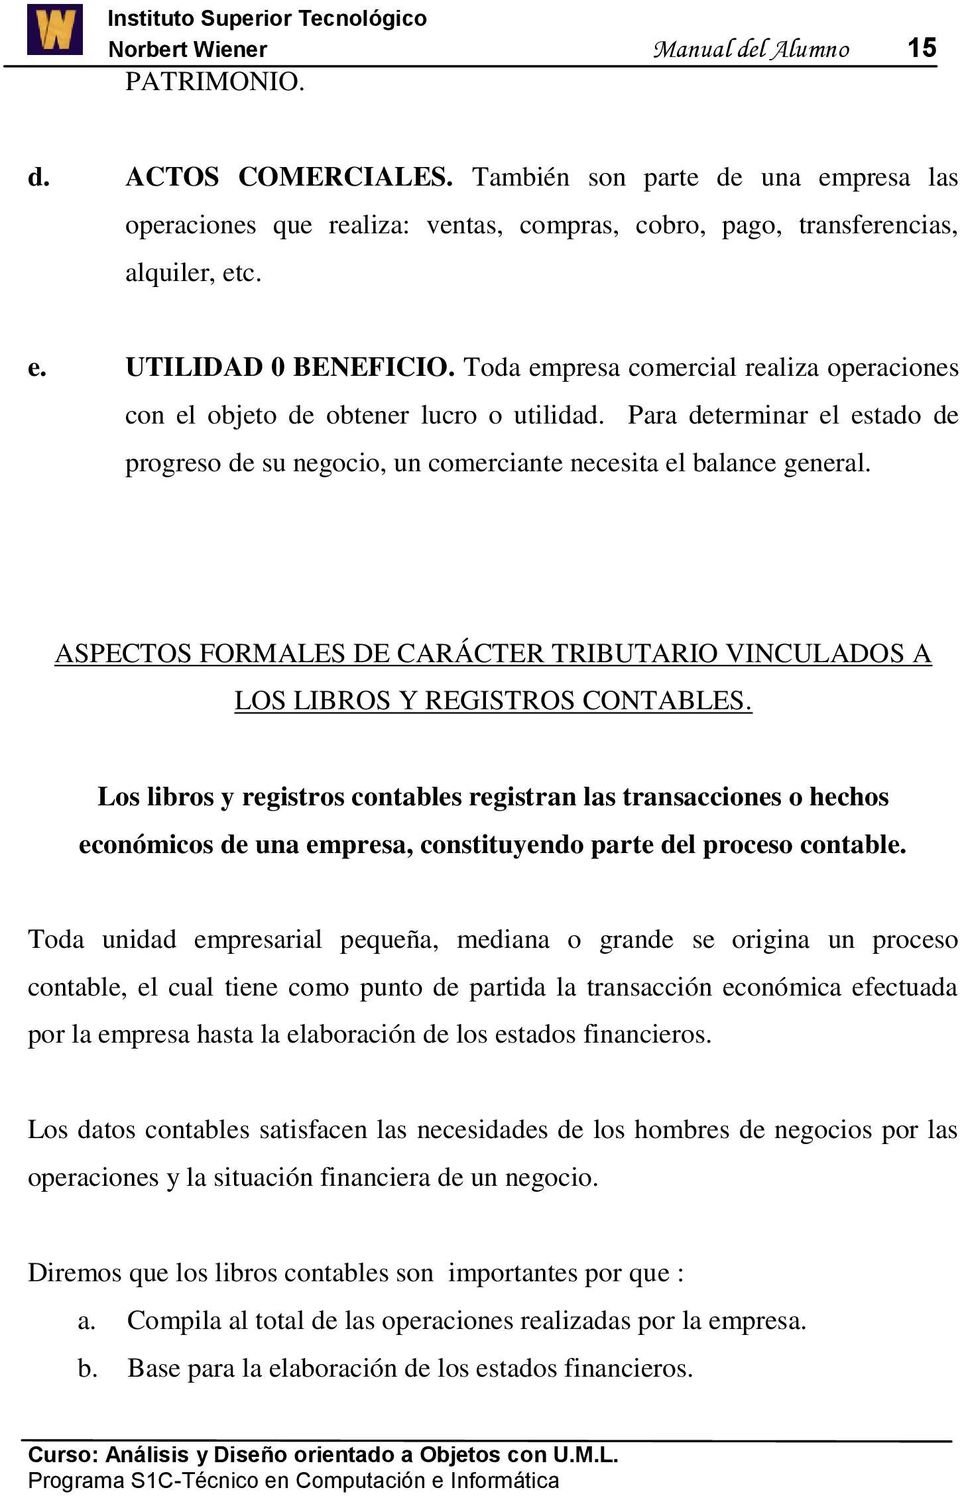 ASPECTOS FORMALES DE CARÁCTER TRIBUTARIO VINCULADOS A LOS LIBROS Y REGISTROS CONTABLES.